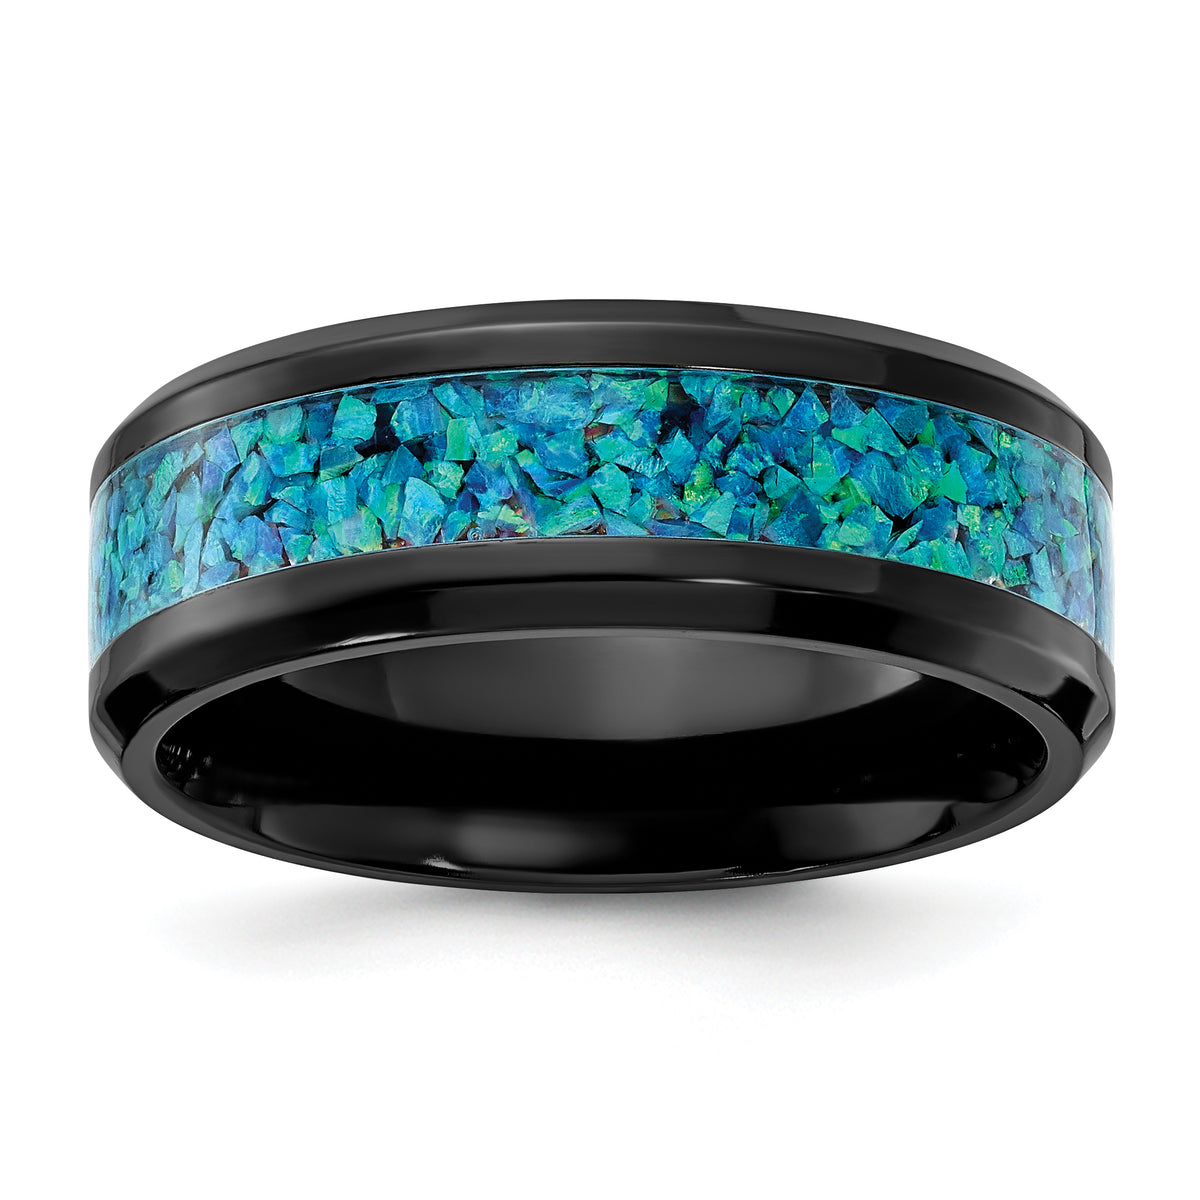 Black Zirconium Polished with Blue Imitation Opal Inlay 8.00mm Band